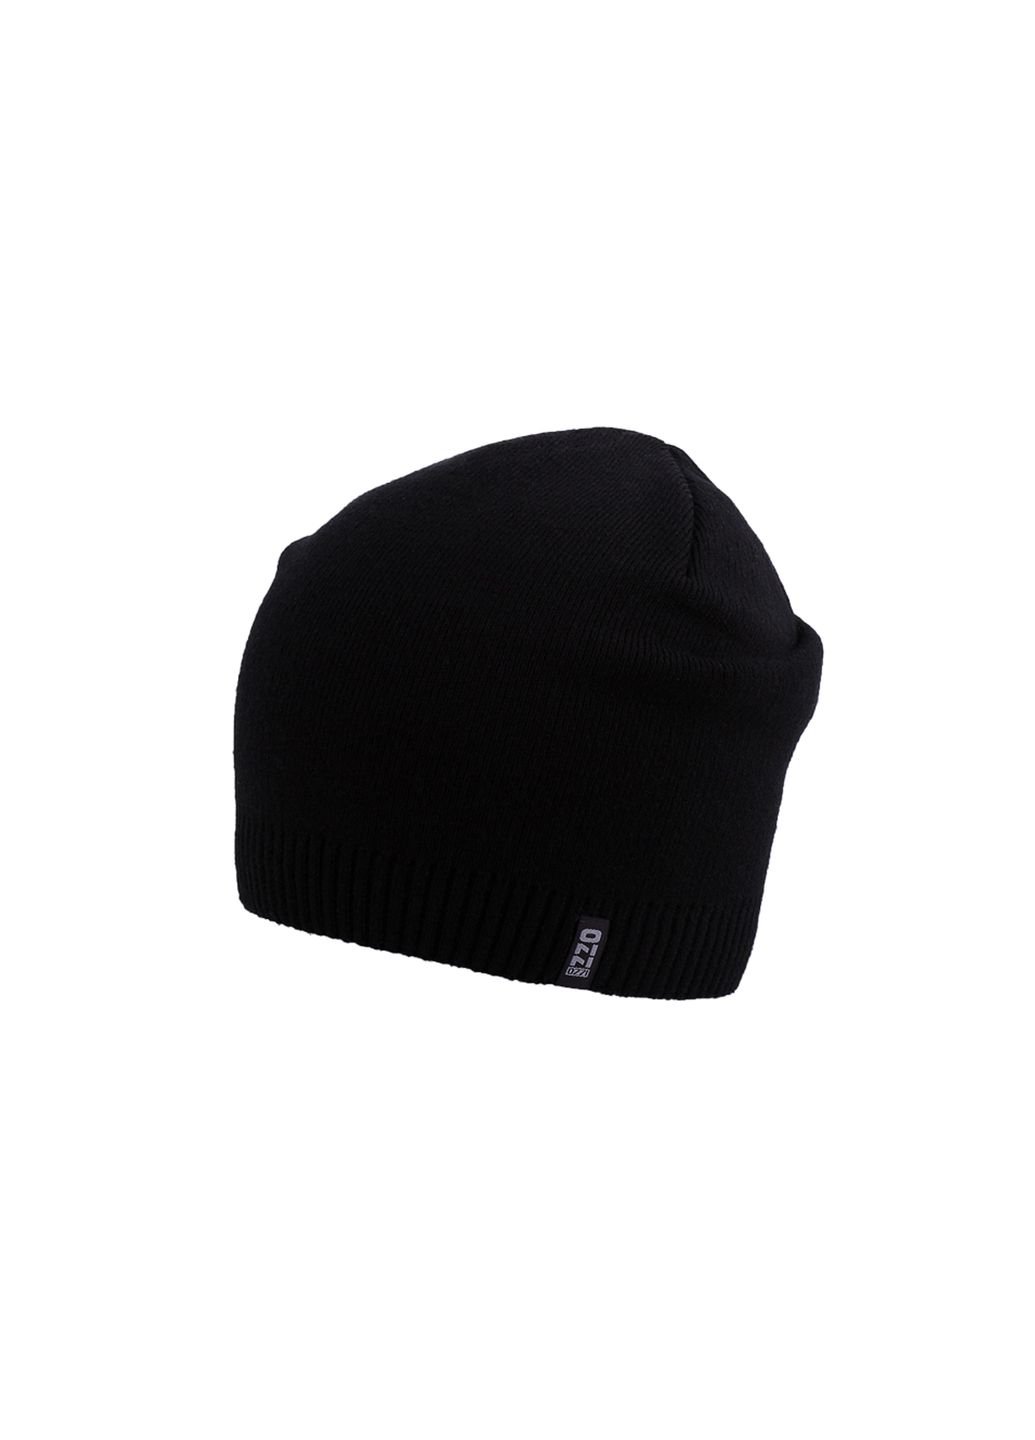 Купить Шерстяная шапка Ozzi на флисовой подкладке 220030 - Черный в интернет-магазине